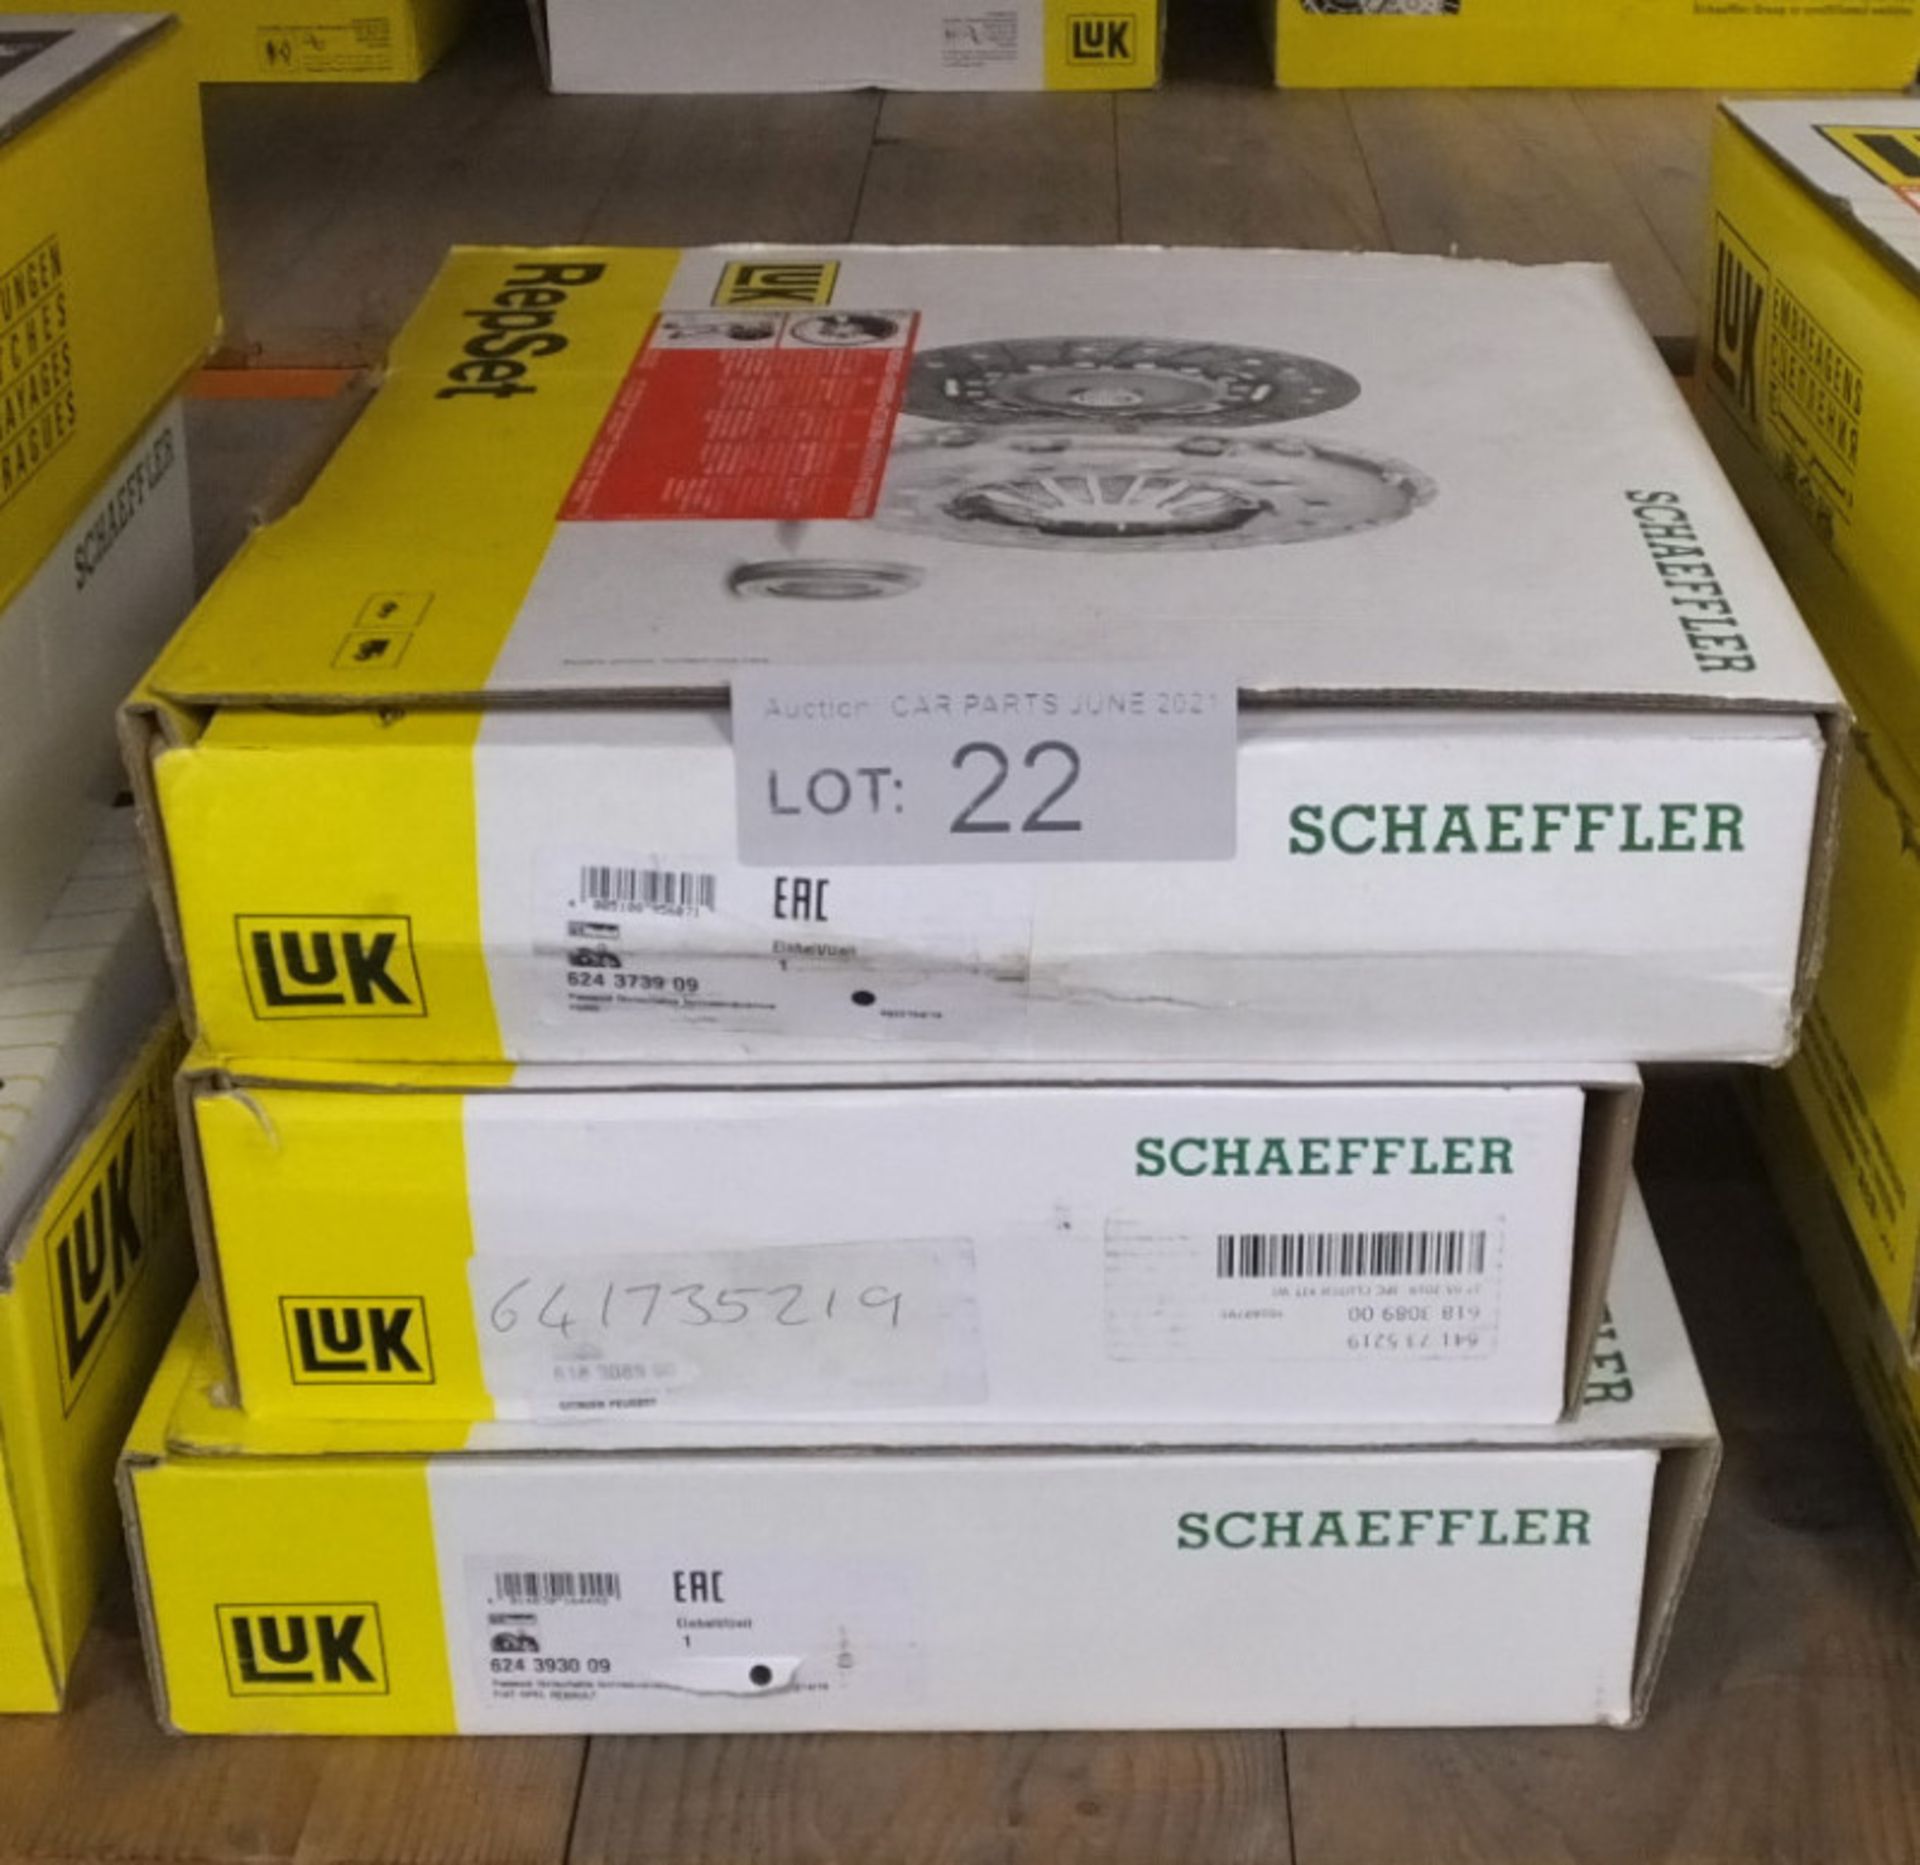 3x LUK Schaeffler Repset Clutch Kits - Models - 624 3739 09, 641 7352 19 & 624 3930 09